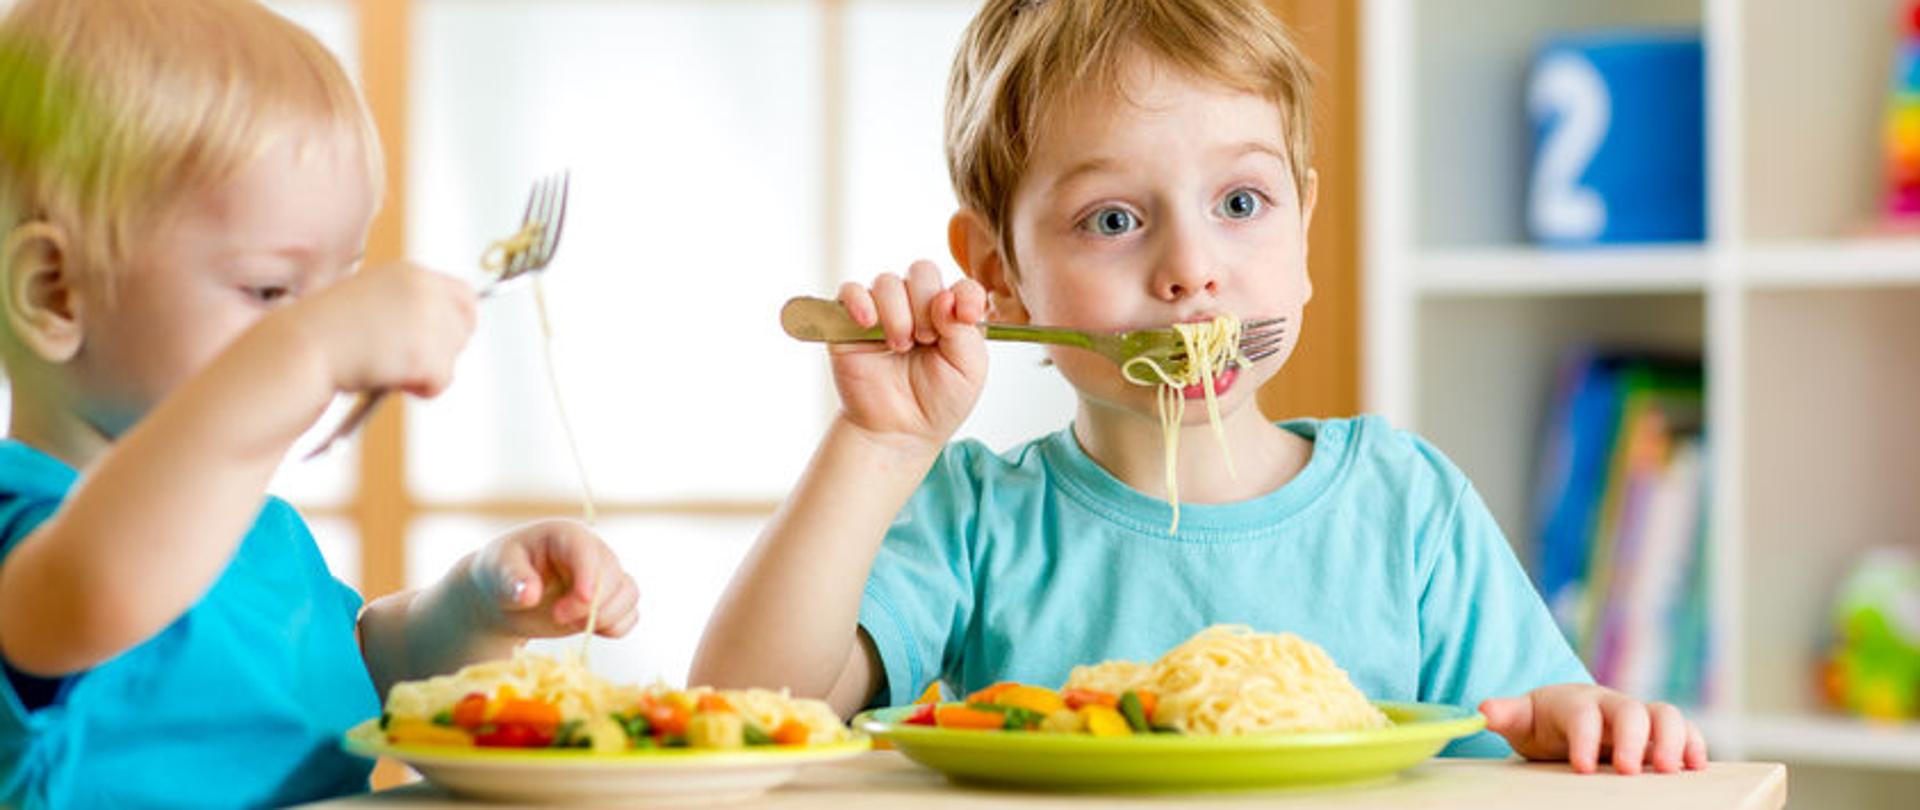 dzieci jedzą zdrową żywność w przedszkolu lub w domu
źródło: https://dietetycy.org.pl/wp-content/uploads/2018/09/35708970_s.jpg